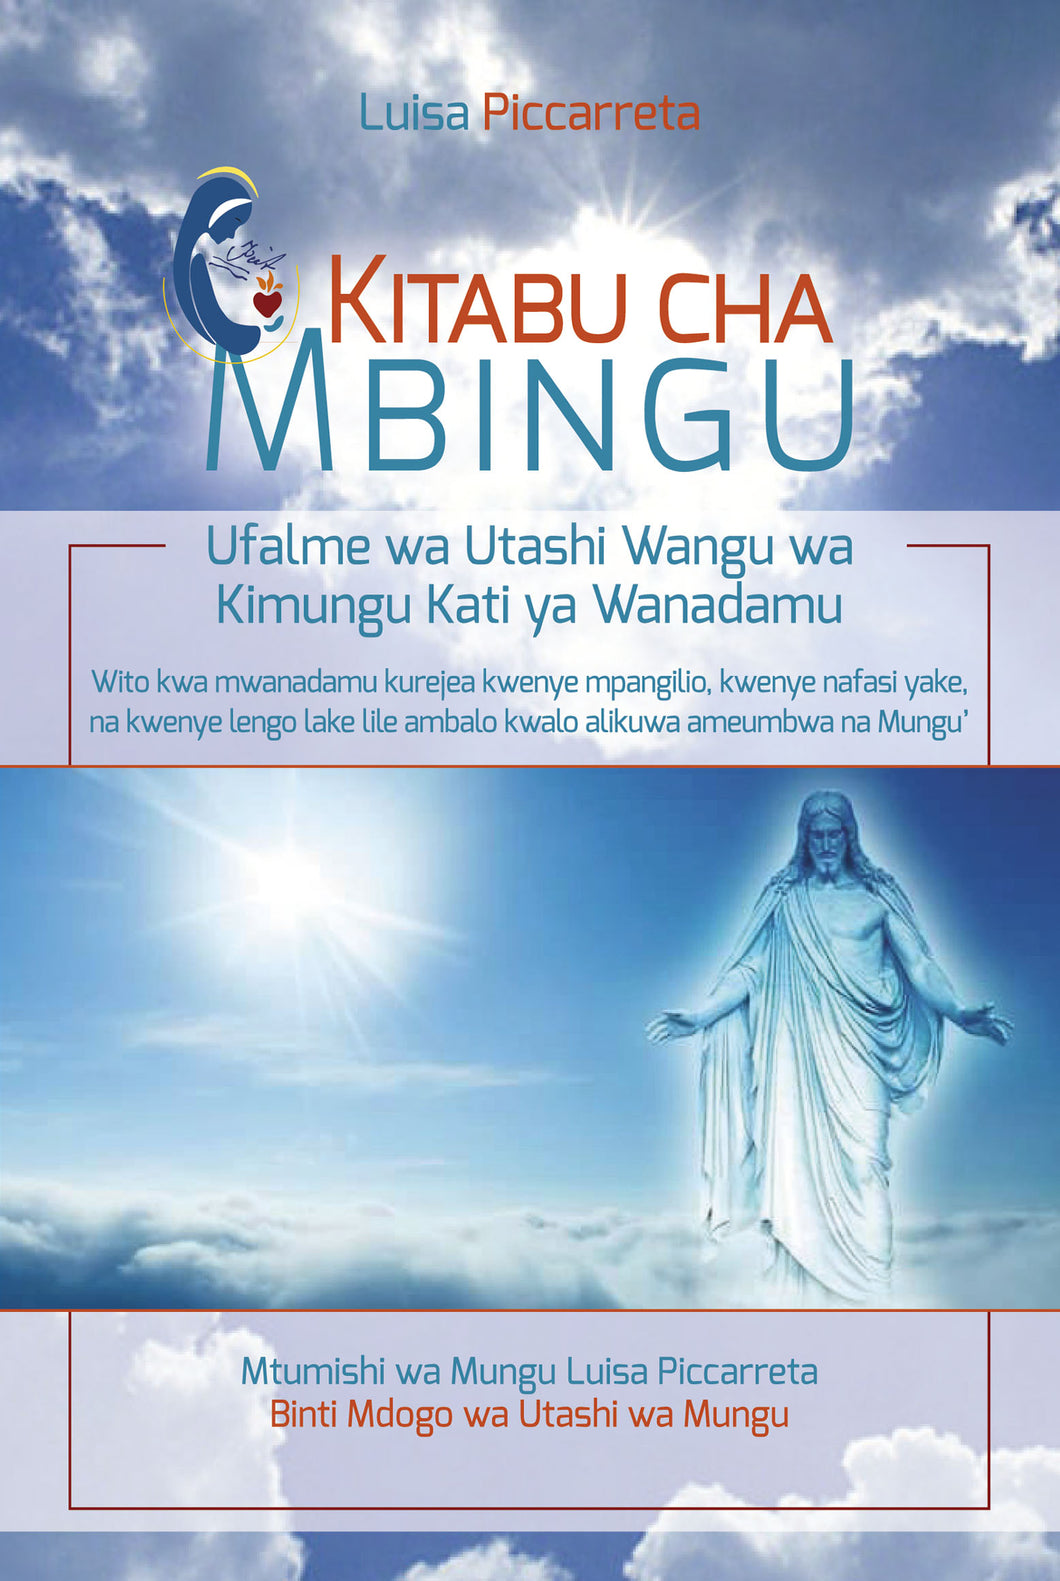 Ufalme wa Utashi Wangu wa Kimungu Kati ya Wanadamu - Excerpts from Luisa's writings